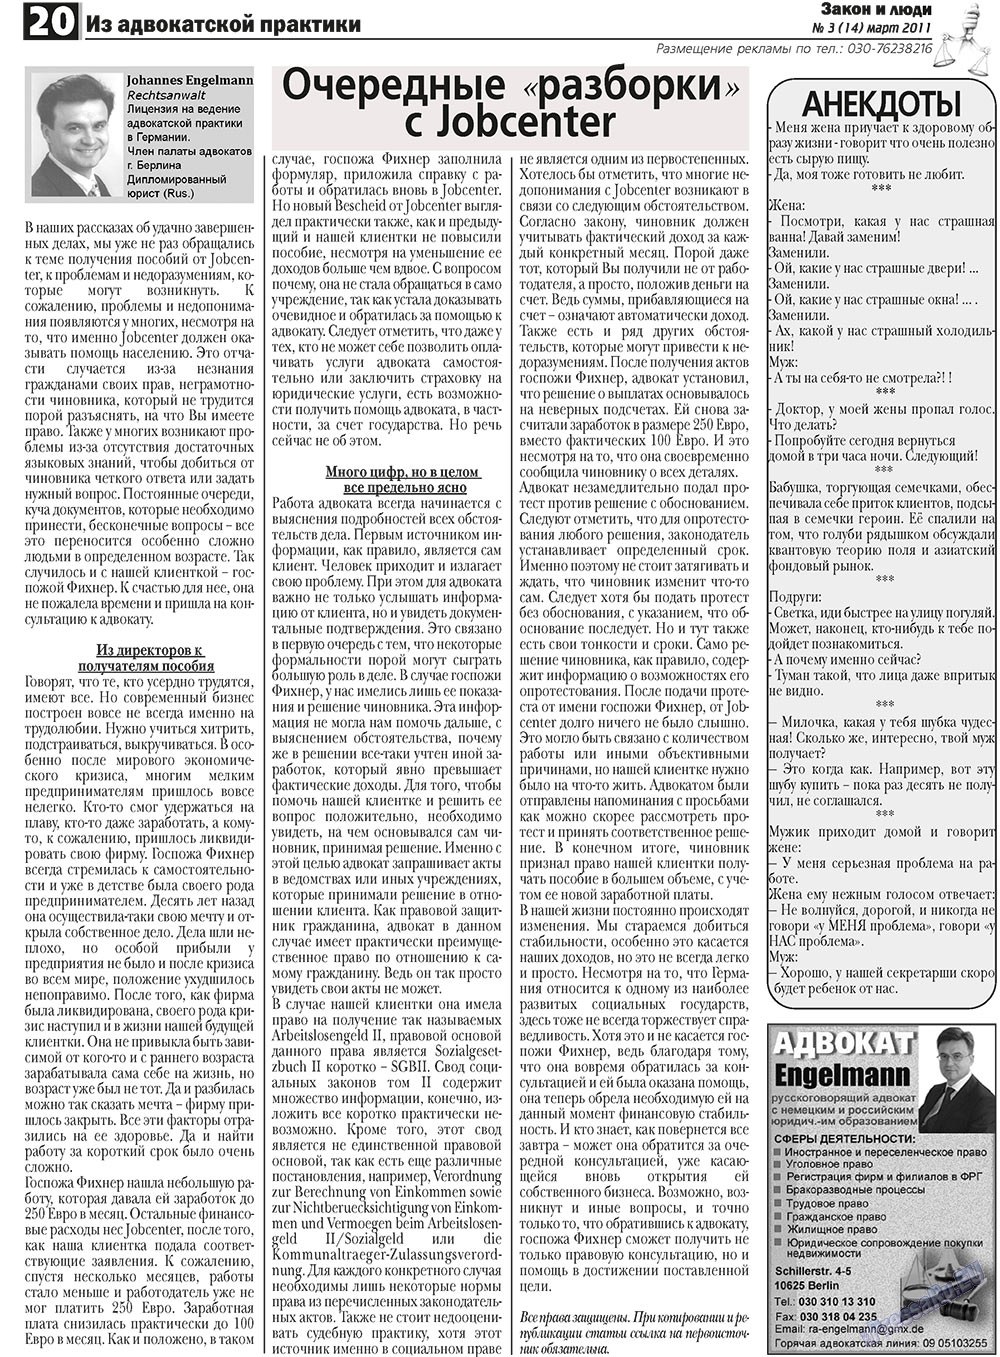 Закон и люди (газета). 2011 год, номер 3, стр. 20